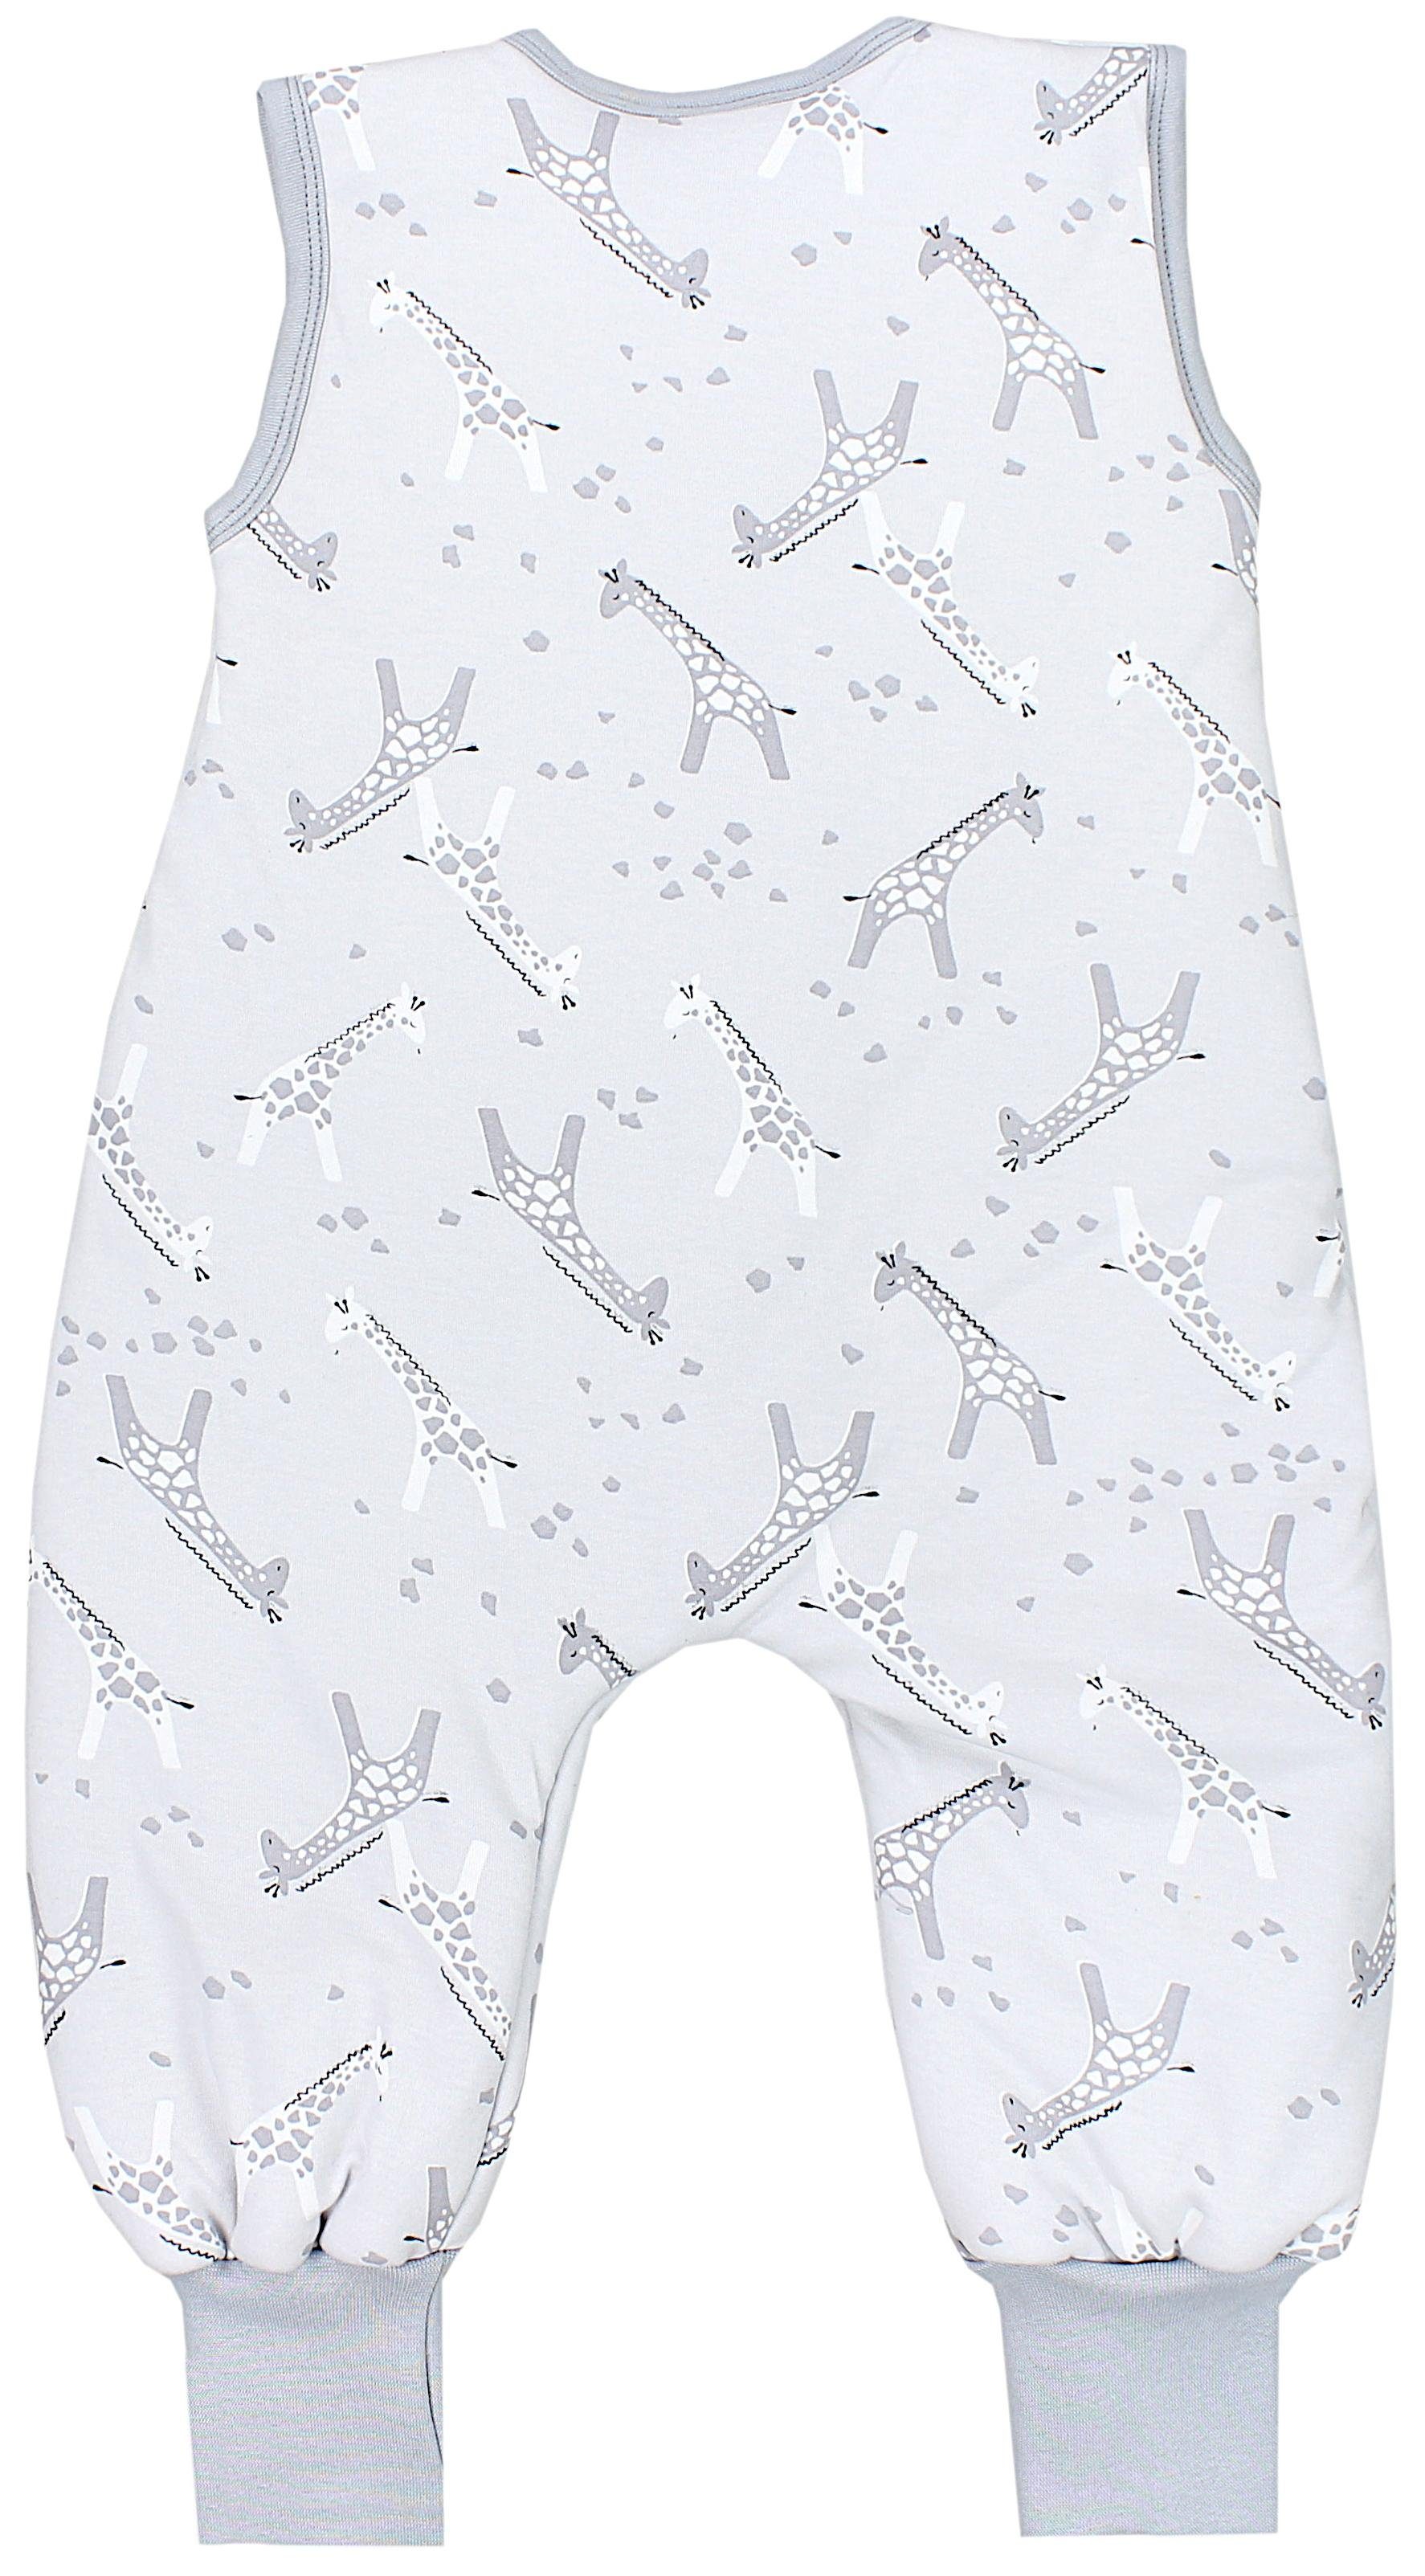 TupTam Babyschlafsack Winter OEKO-TEX Beinen Graue 2,5 zertifiziert Weiß mit Schlafsack Giraffen TOG Unisex